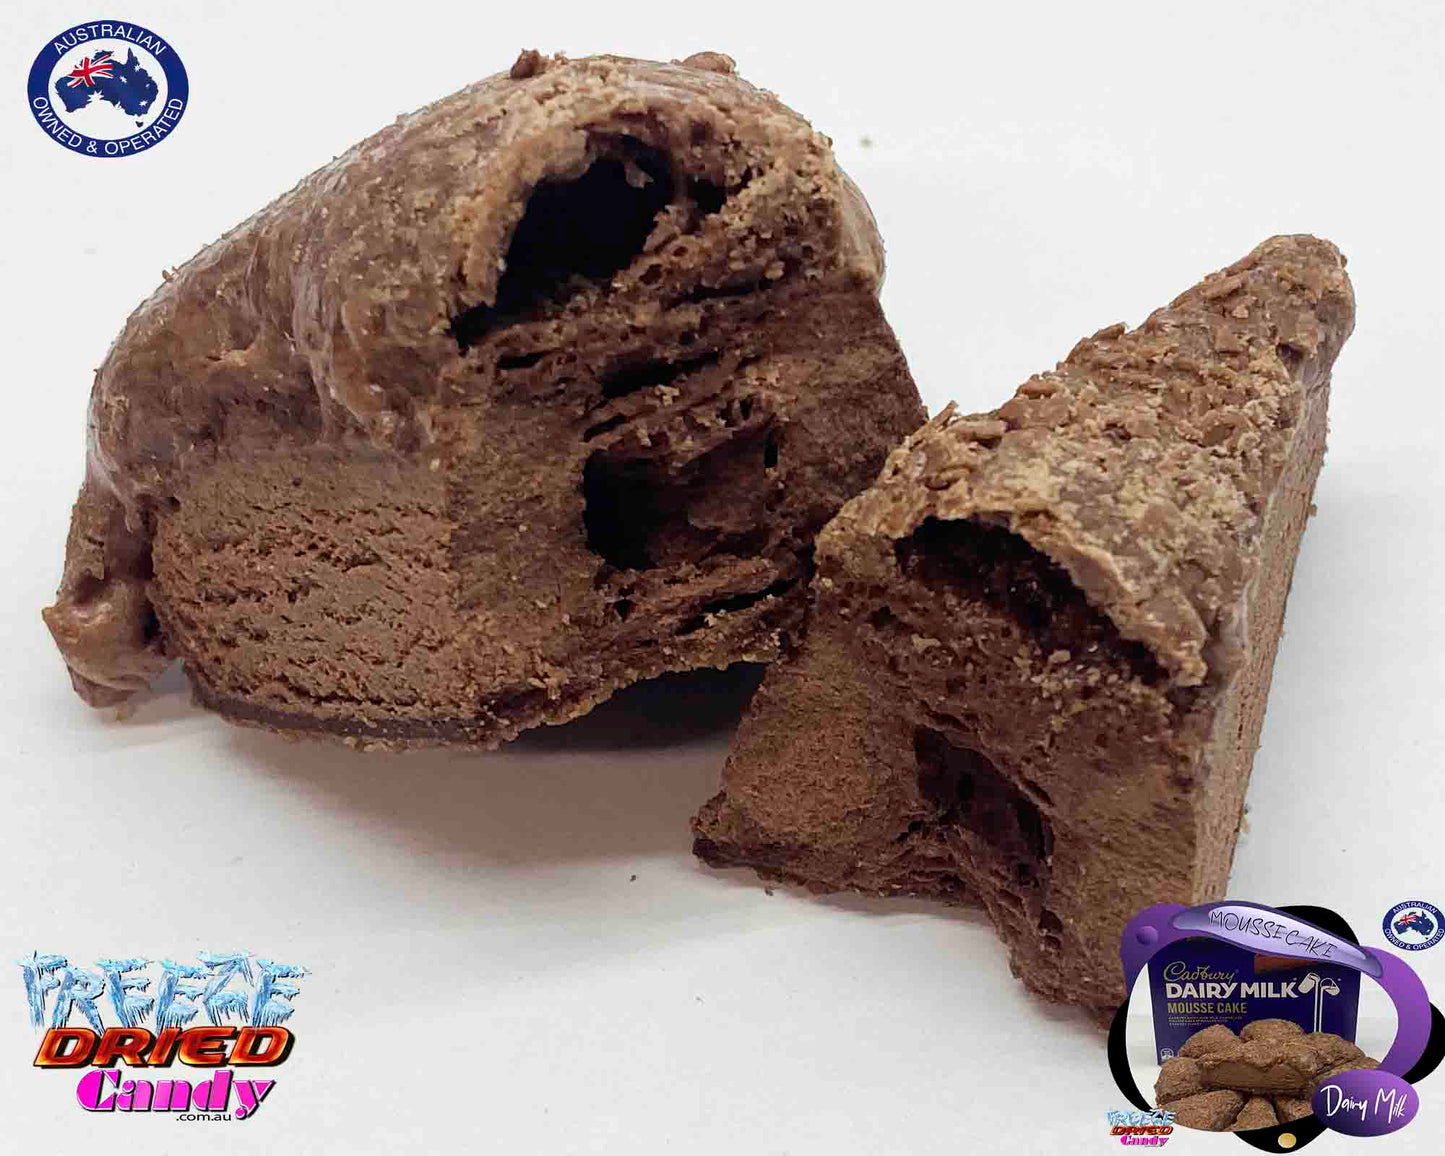 Freeze Dried Dairy Milk Mousse Cake - Cadbury - Freeze Dried Candy Lollies & Treats